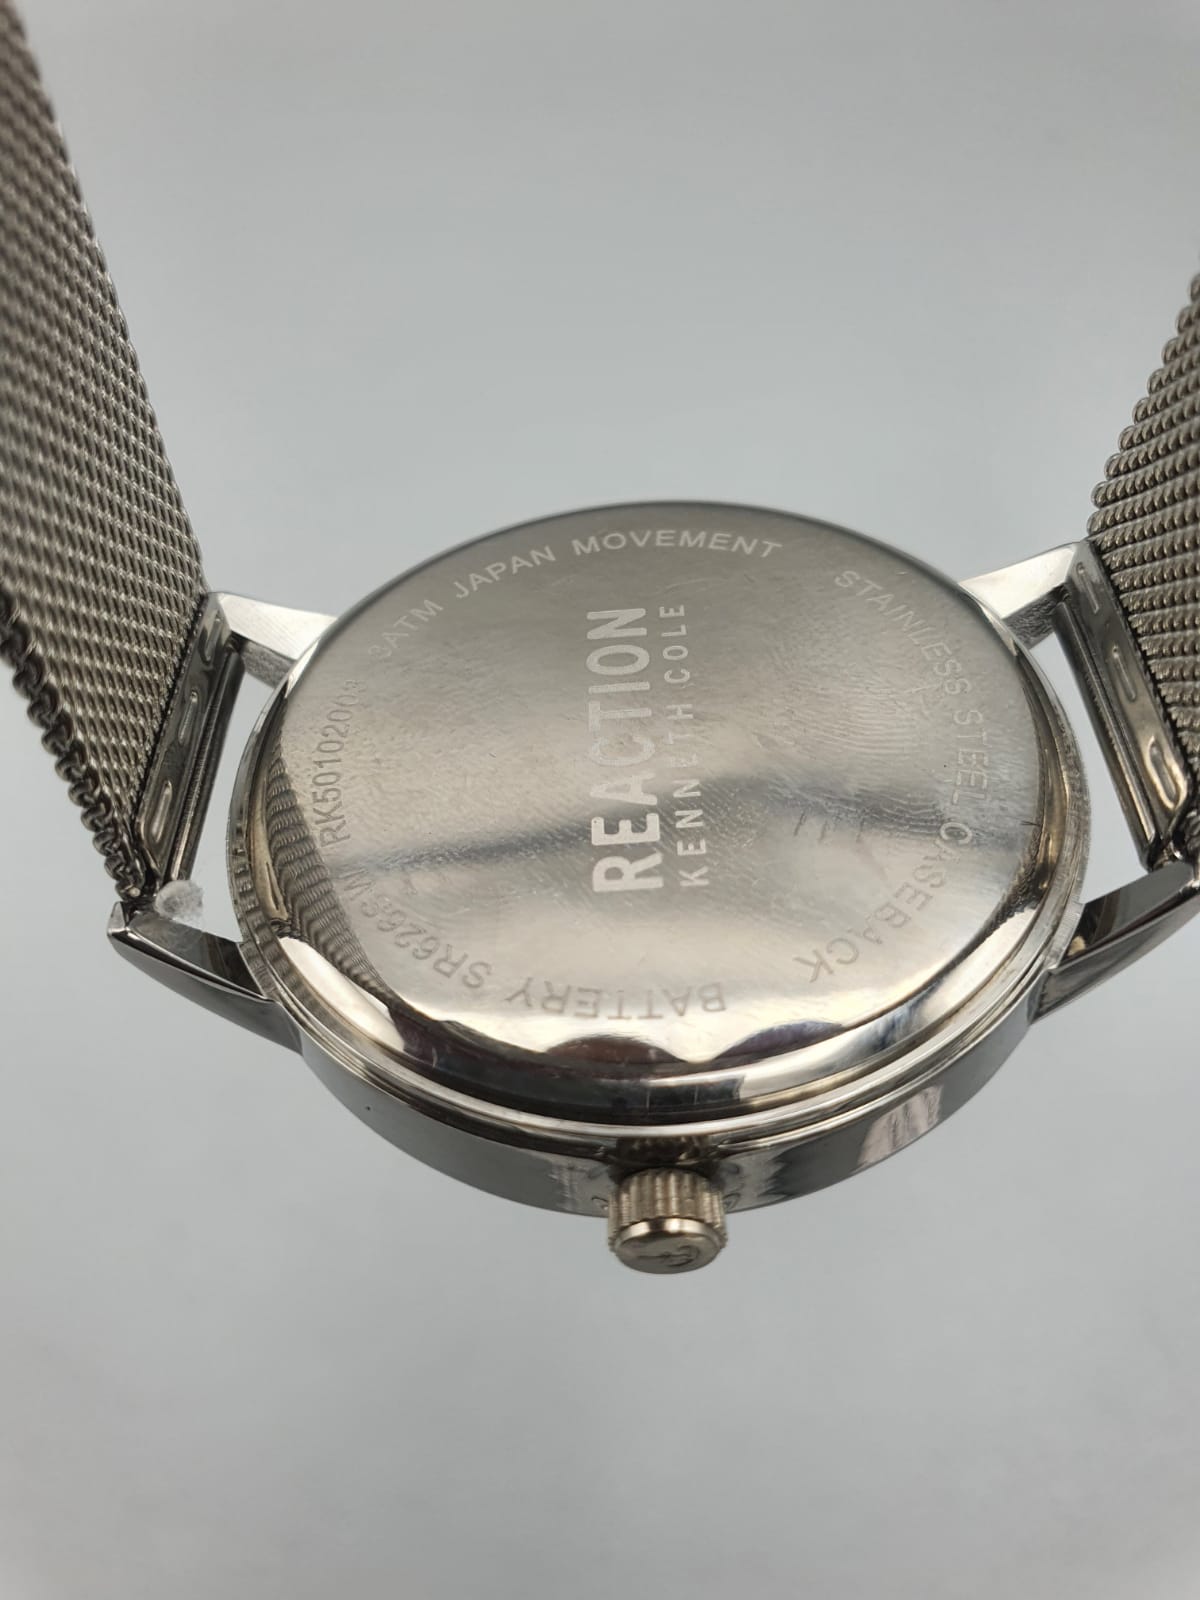 Kenneth Cole RK50104001 wristwatches women's quartz